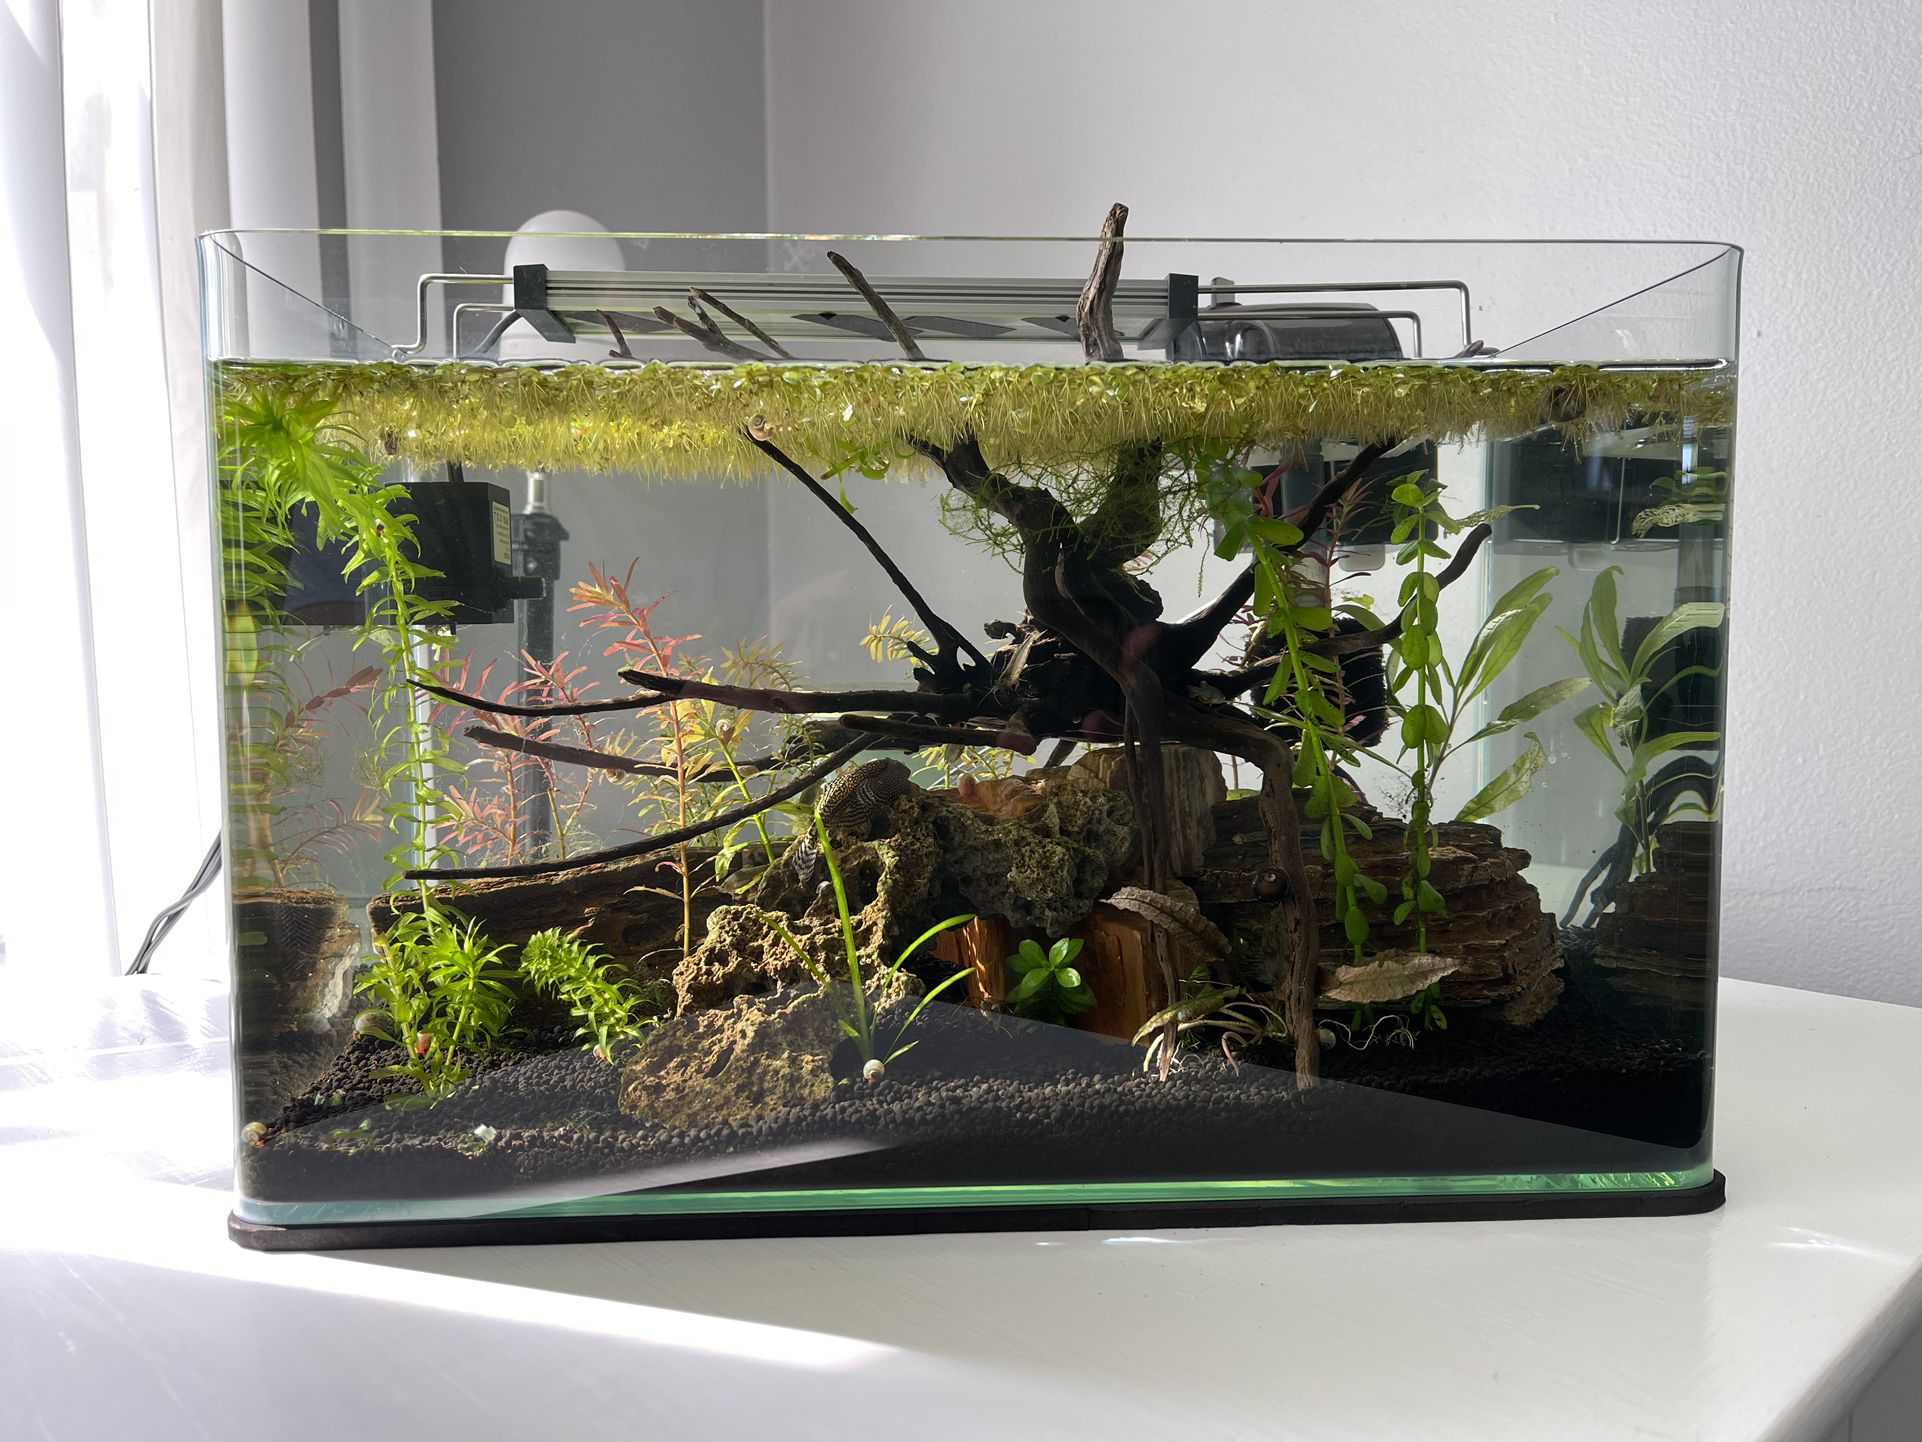 Beginner Floating Plants For Fish Tanks